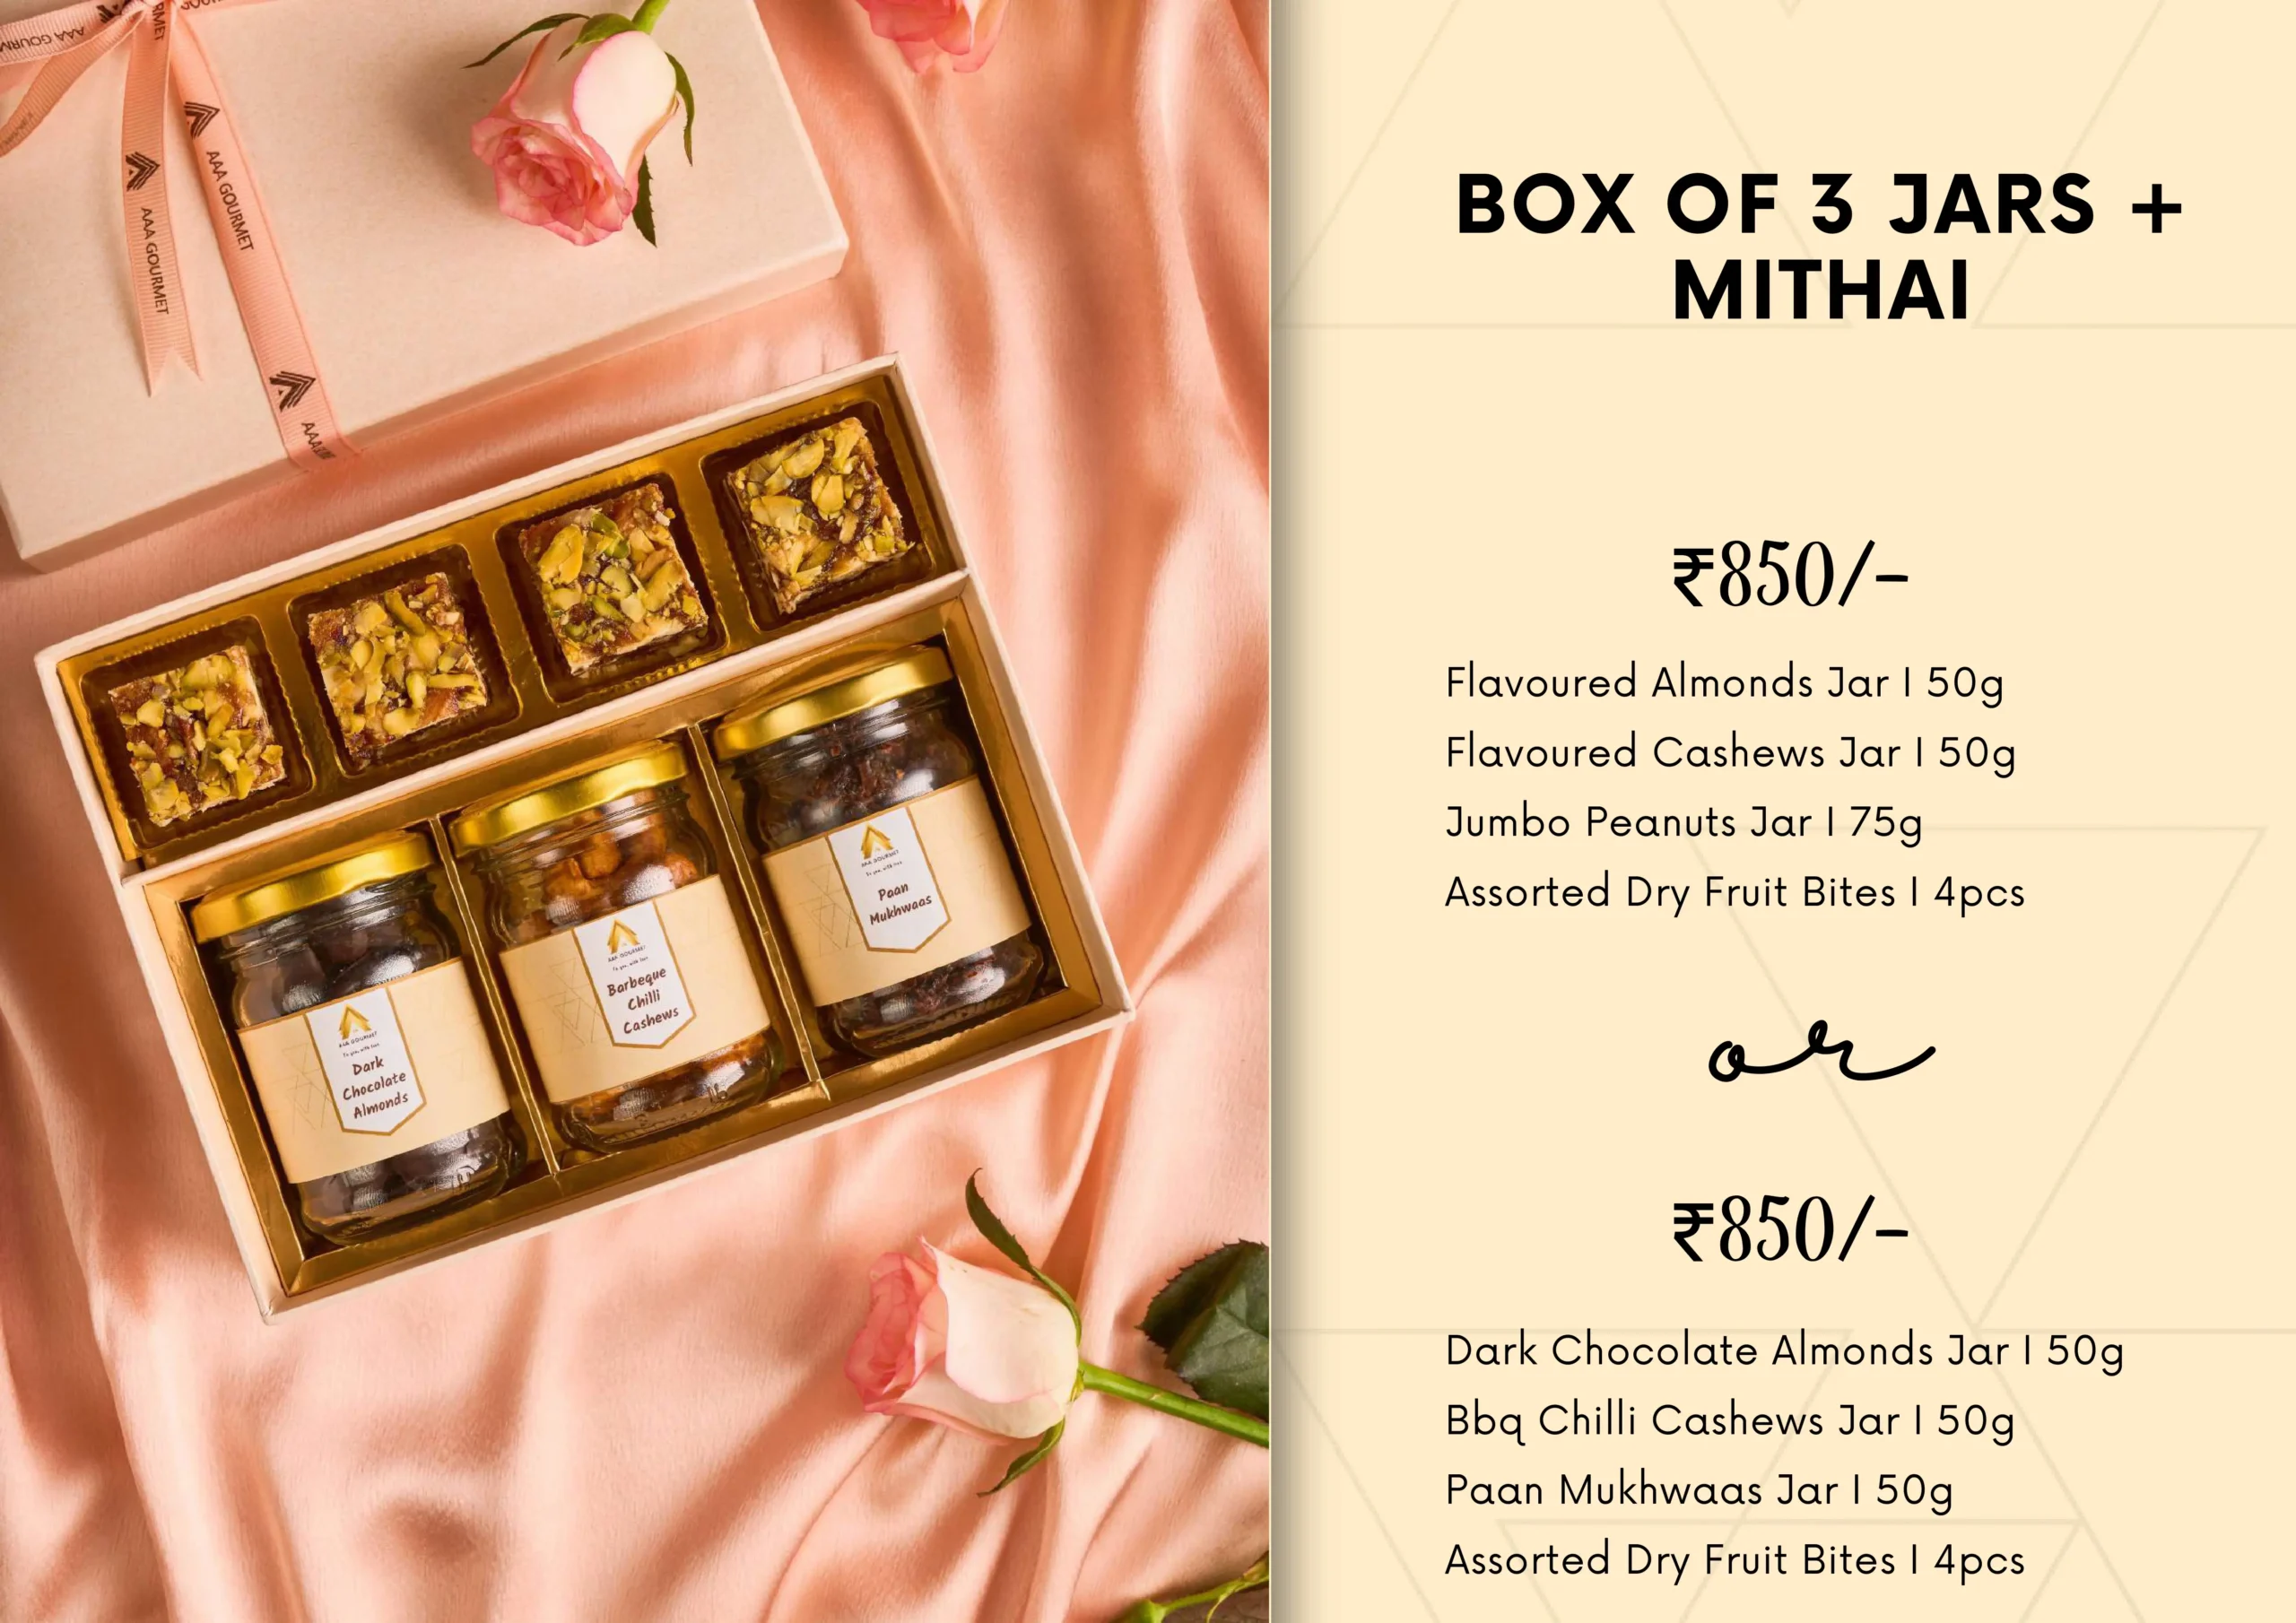 Box of 3 Jars + Mithai 850/-